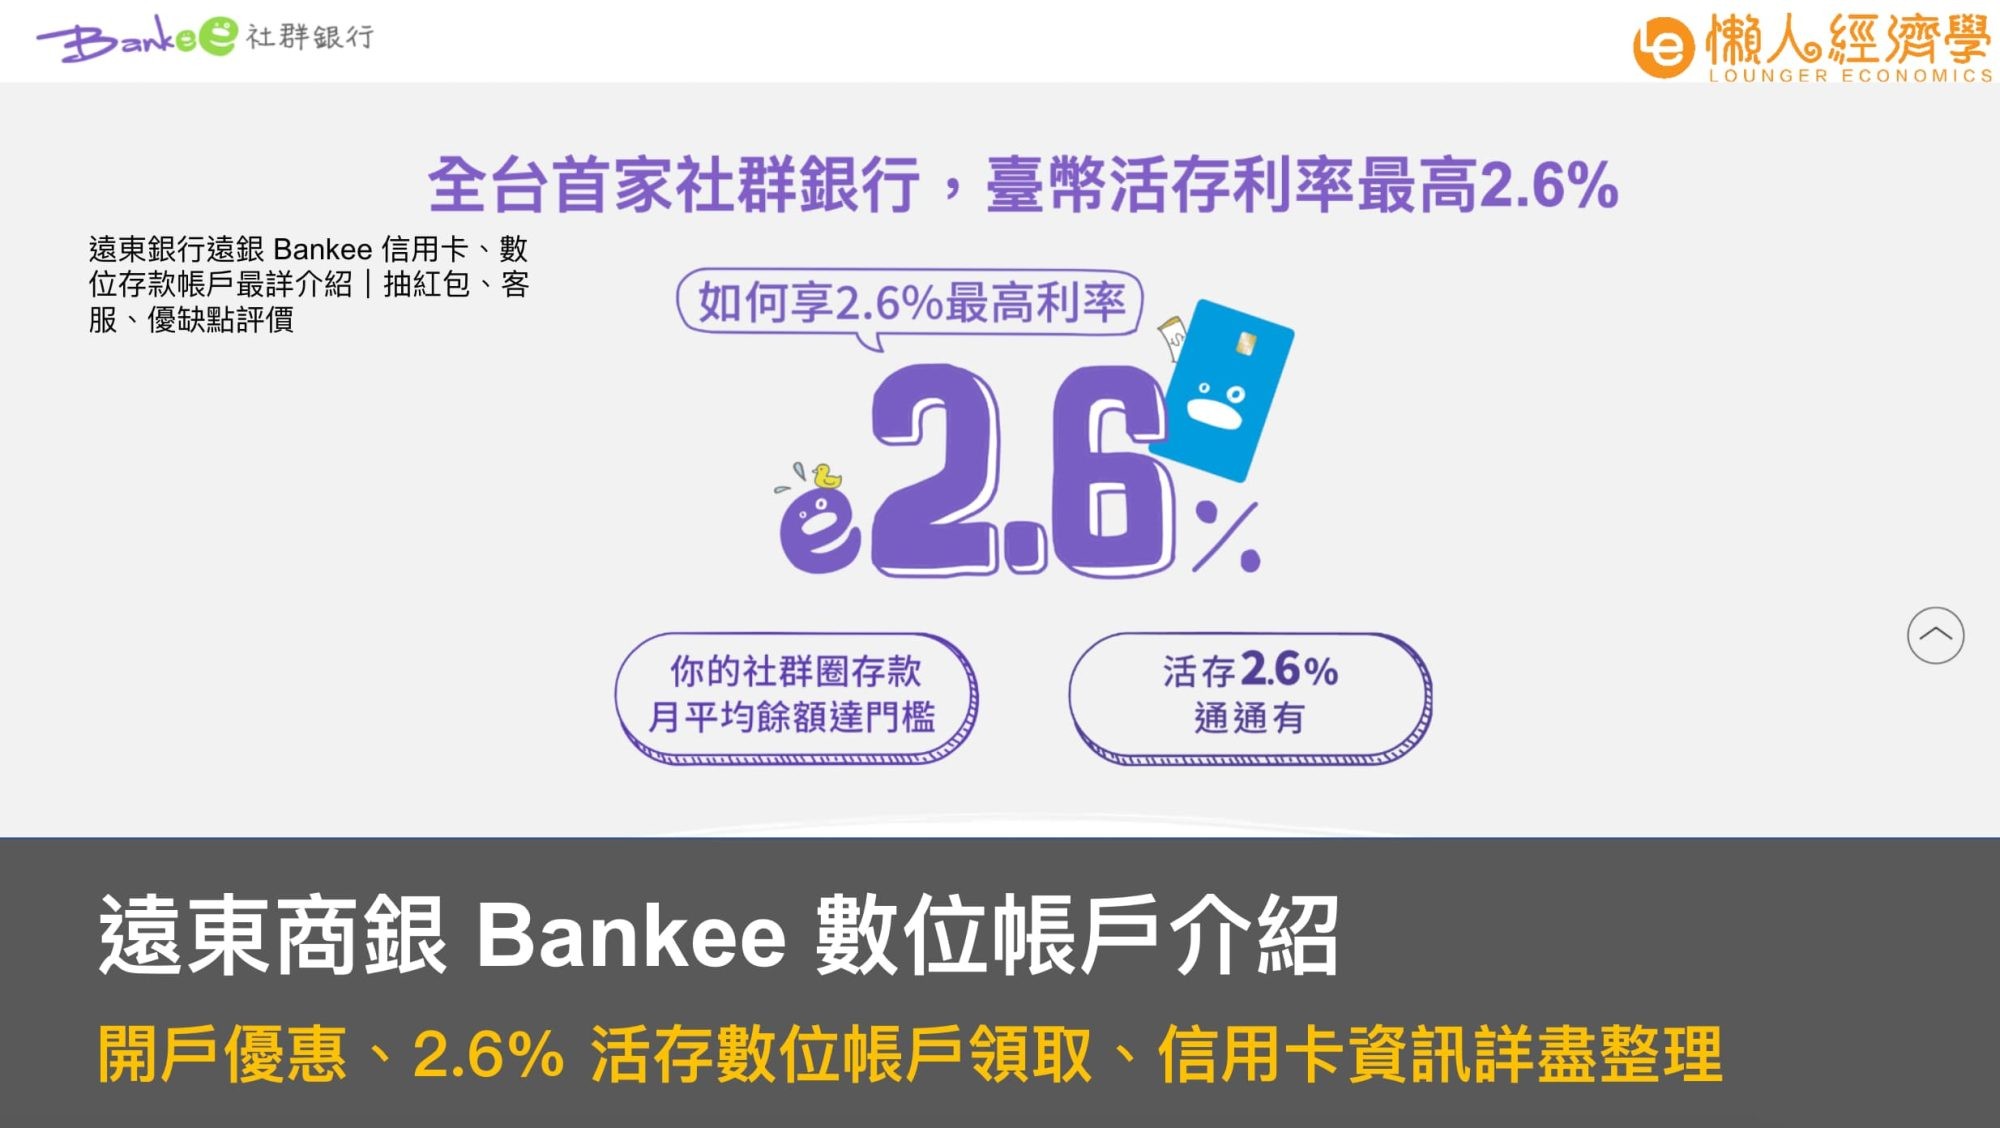 遠東商銀 Bankee 數位帳戶介紹：開戶優惠、2.6% 活存數位帳戶領取、信用卡資訊詳盡整理